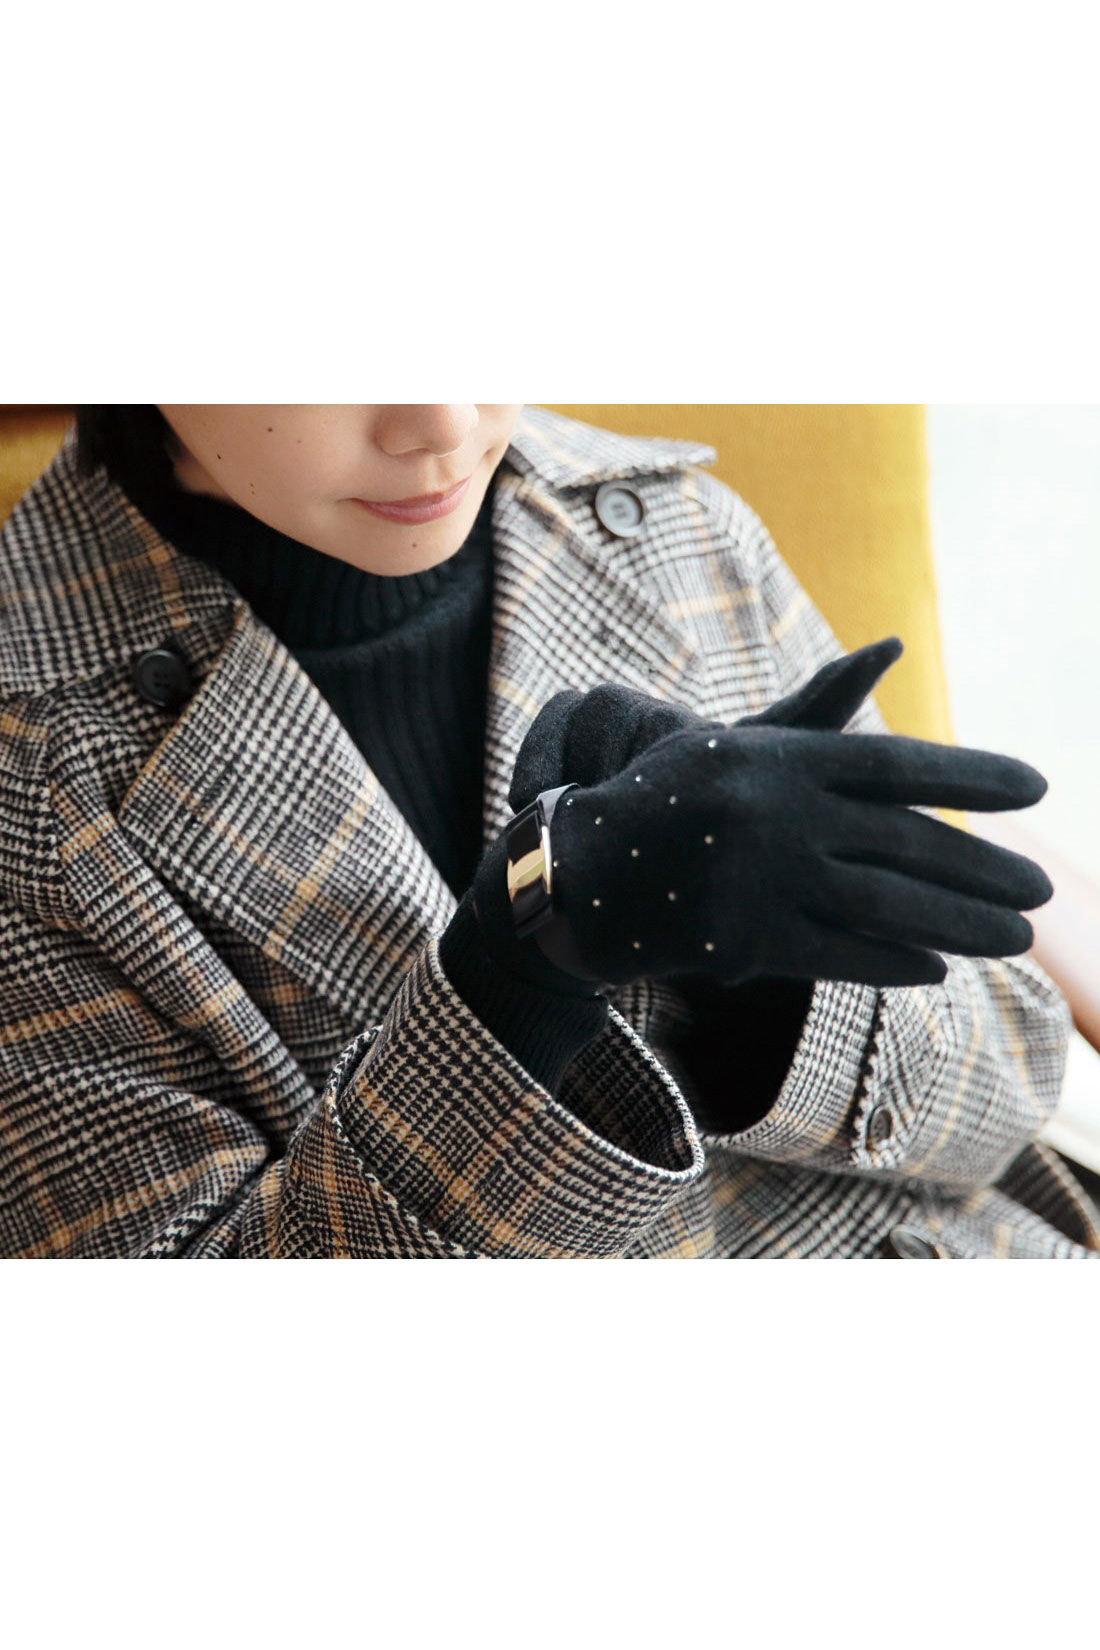 Live in  comfort|リブ イン コンフォート　ラインストーンがキラキラ輝くニットソー手袋〈グレー〉|※着用イメージです。お届けするカラーとは異なります。